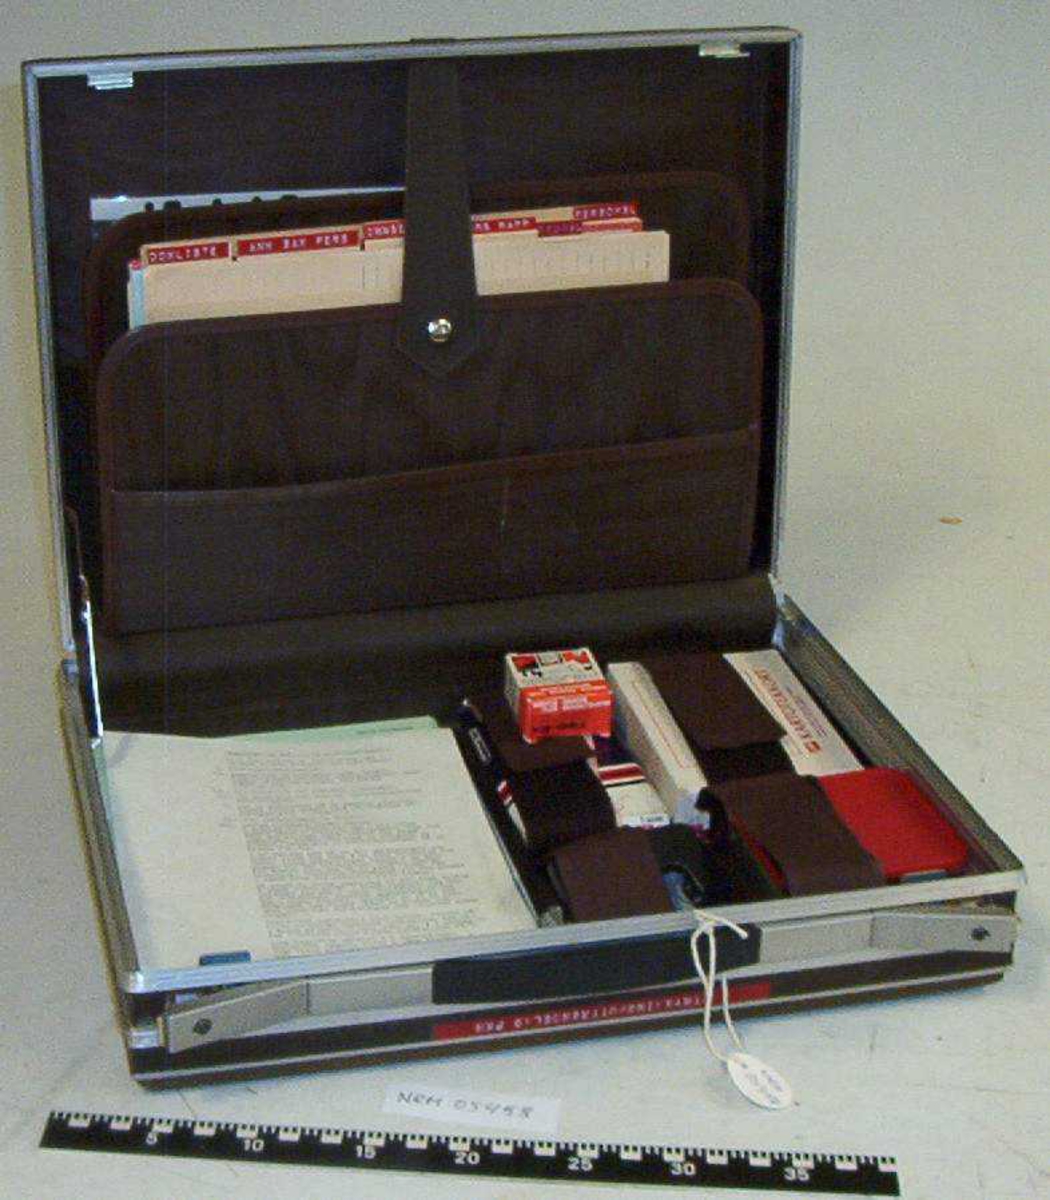 Kofferten inneholder skjemaer og komplett utrtyr for rapporter til Uttrøndelag politikammers utrykningspersonell.